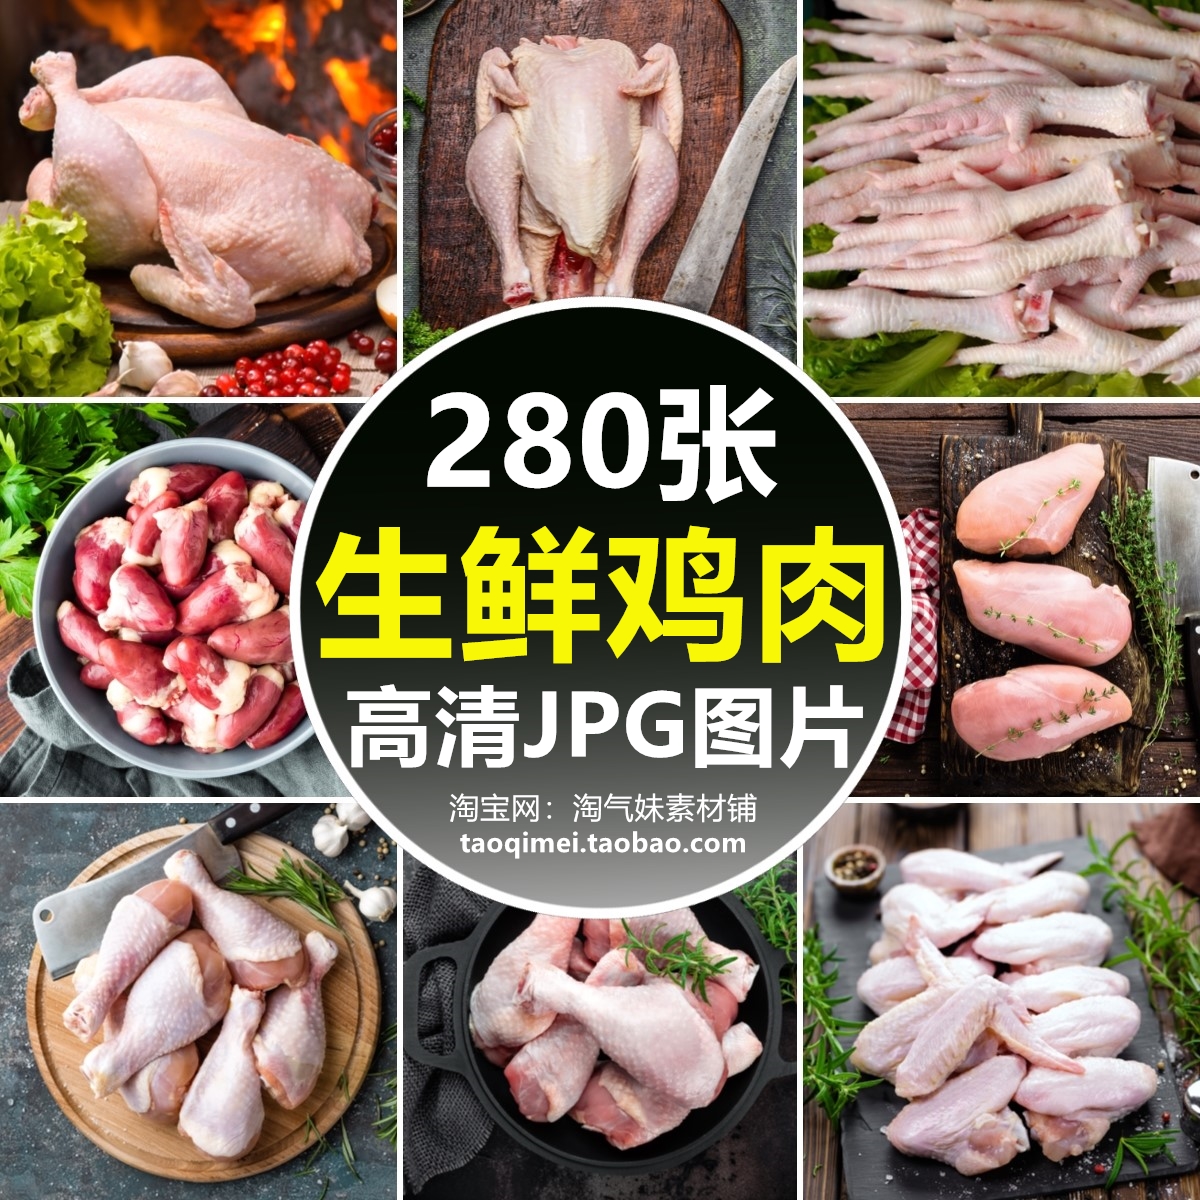 高清JPG鸡肉图片鸡胸肉鸡腿鸡翅根鸡爪鸡心整鸡生鲜肉类食材素材